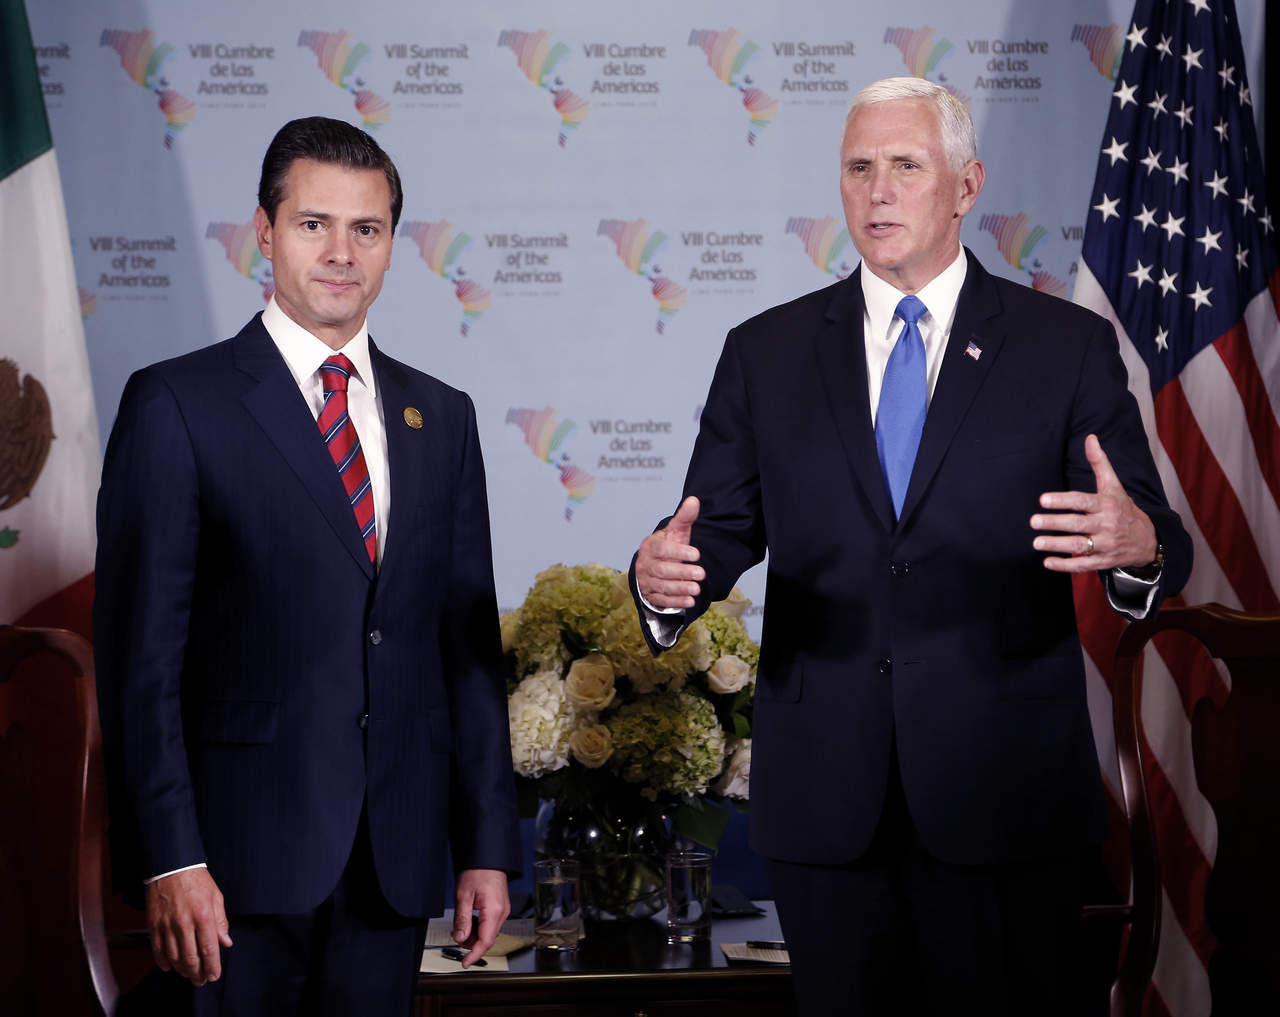 El encuentro entre el Presidente de la República y el Vicepresidente estadounidense -que se realiza a solicitud del gobierno de Estados Unidos en el marco de la VIII Cumbre de las Américas- se realiza en el Complejo Cultural de Lima. (AP) 
